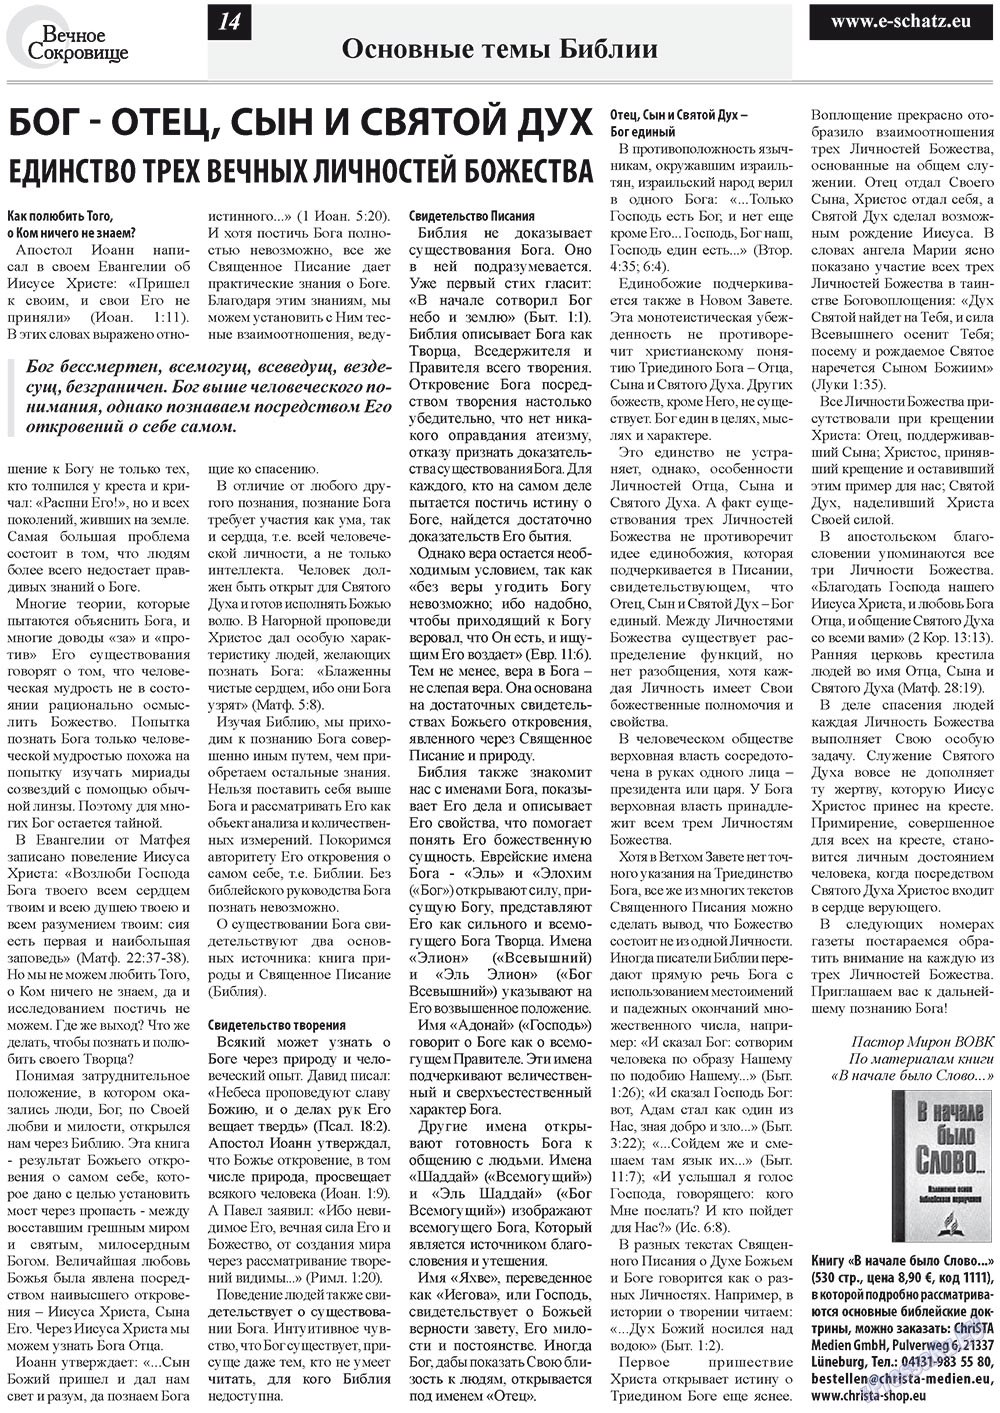 Вечное сокровище (газета). 2012 год, номер 2, стр. 14